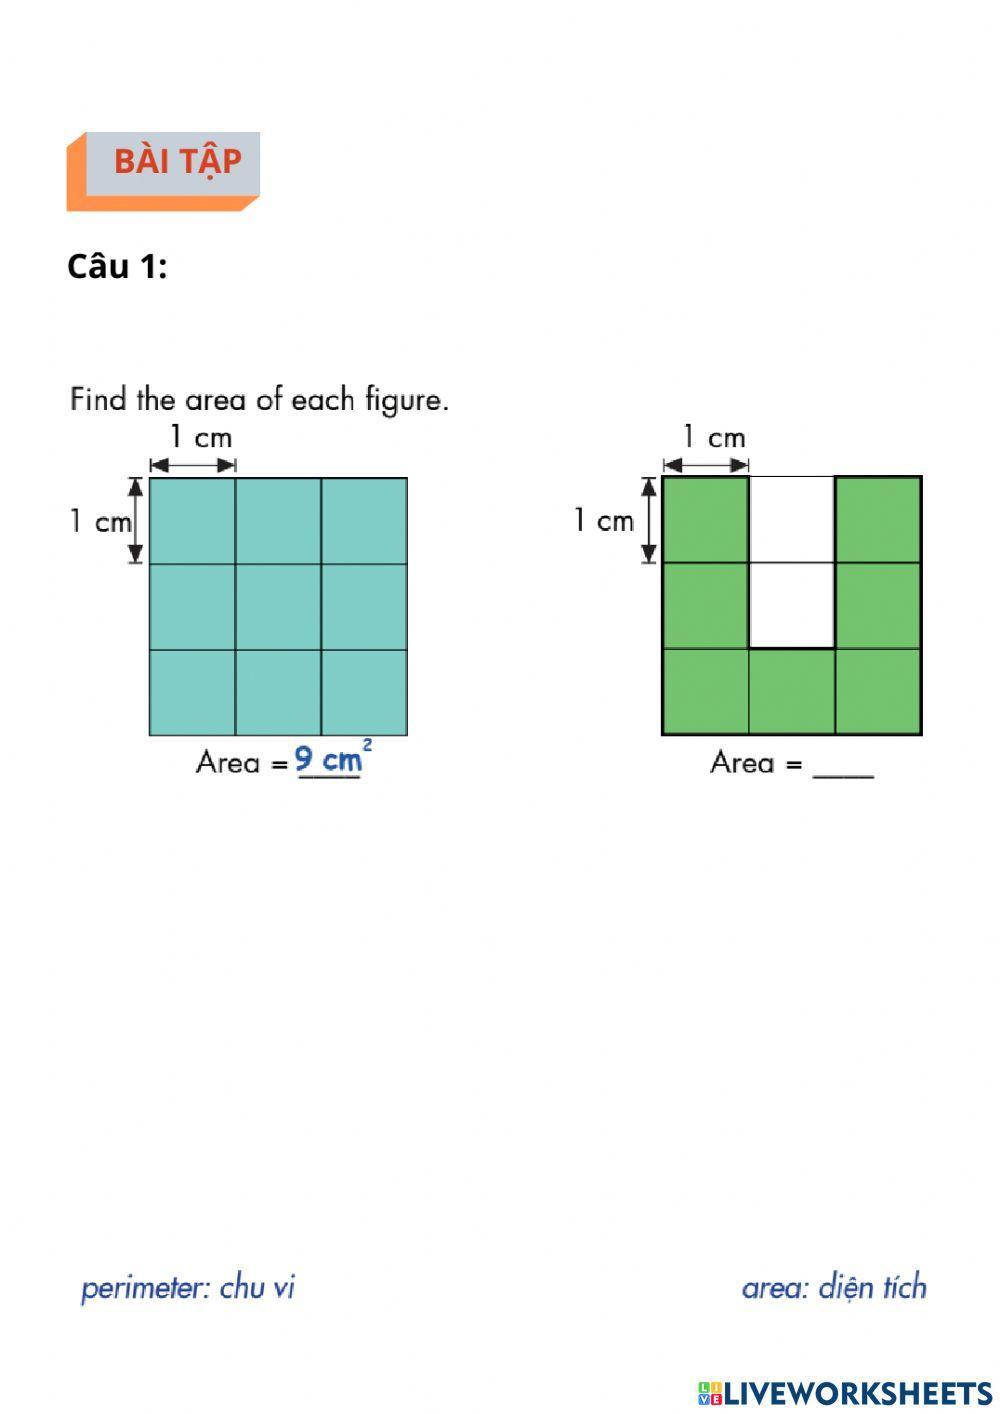 Diện tích của hình chữ nhật và hình vuông